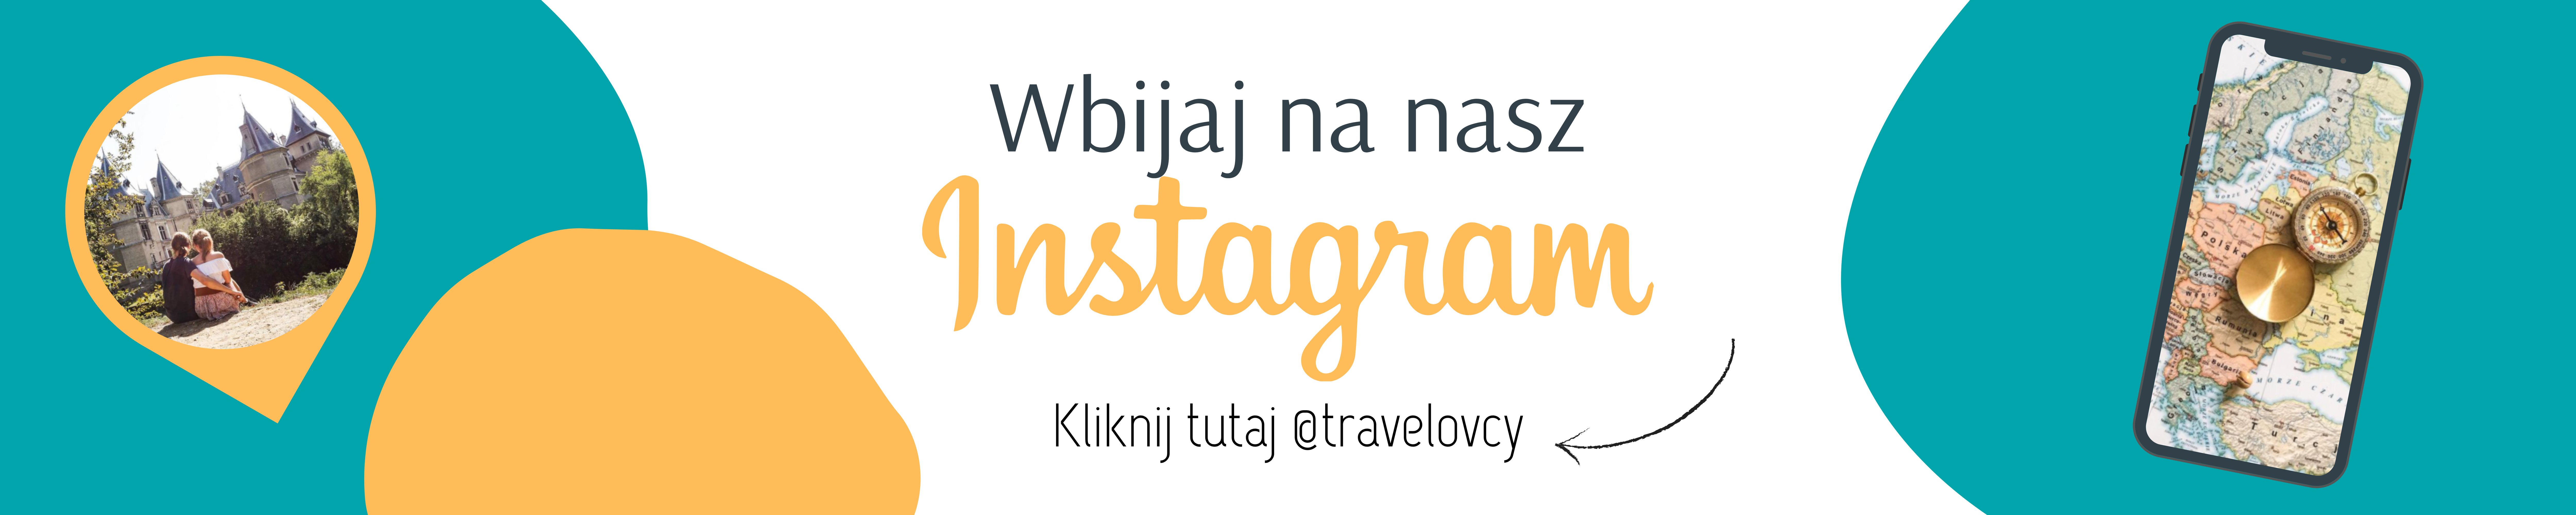 instagram podróżniczy